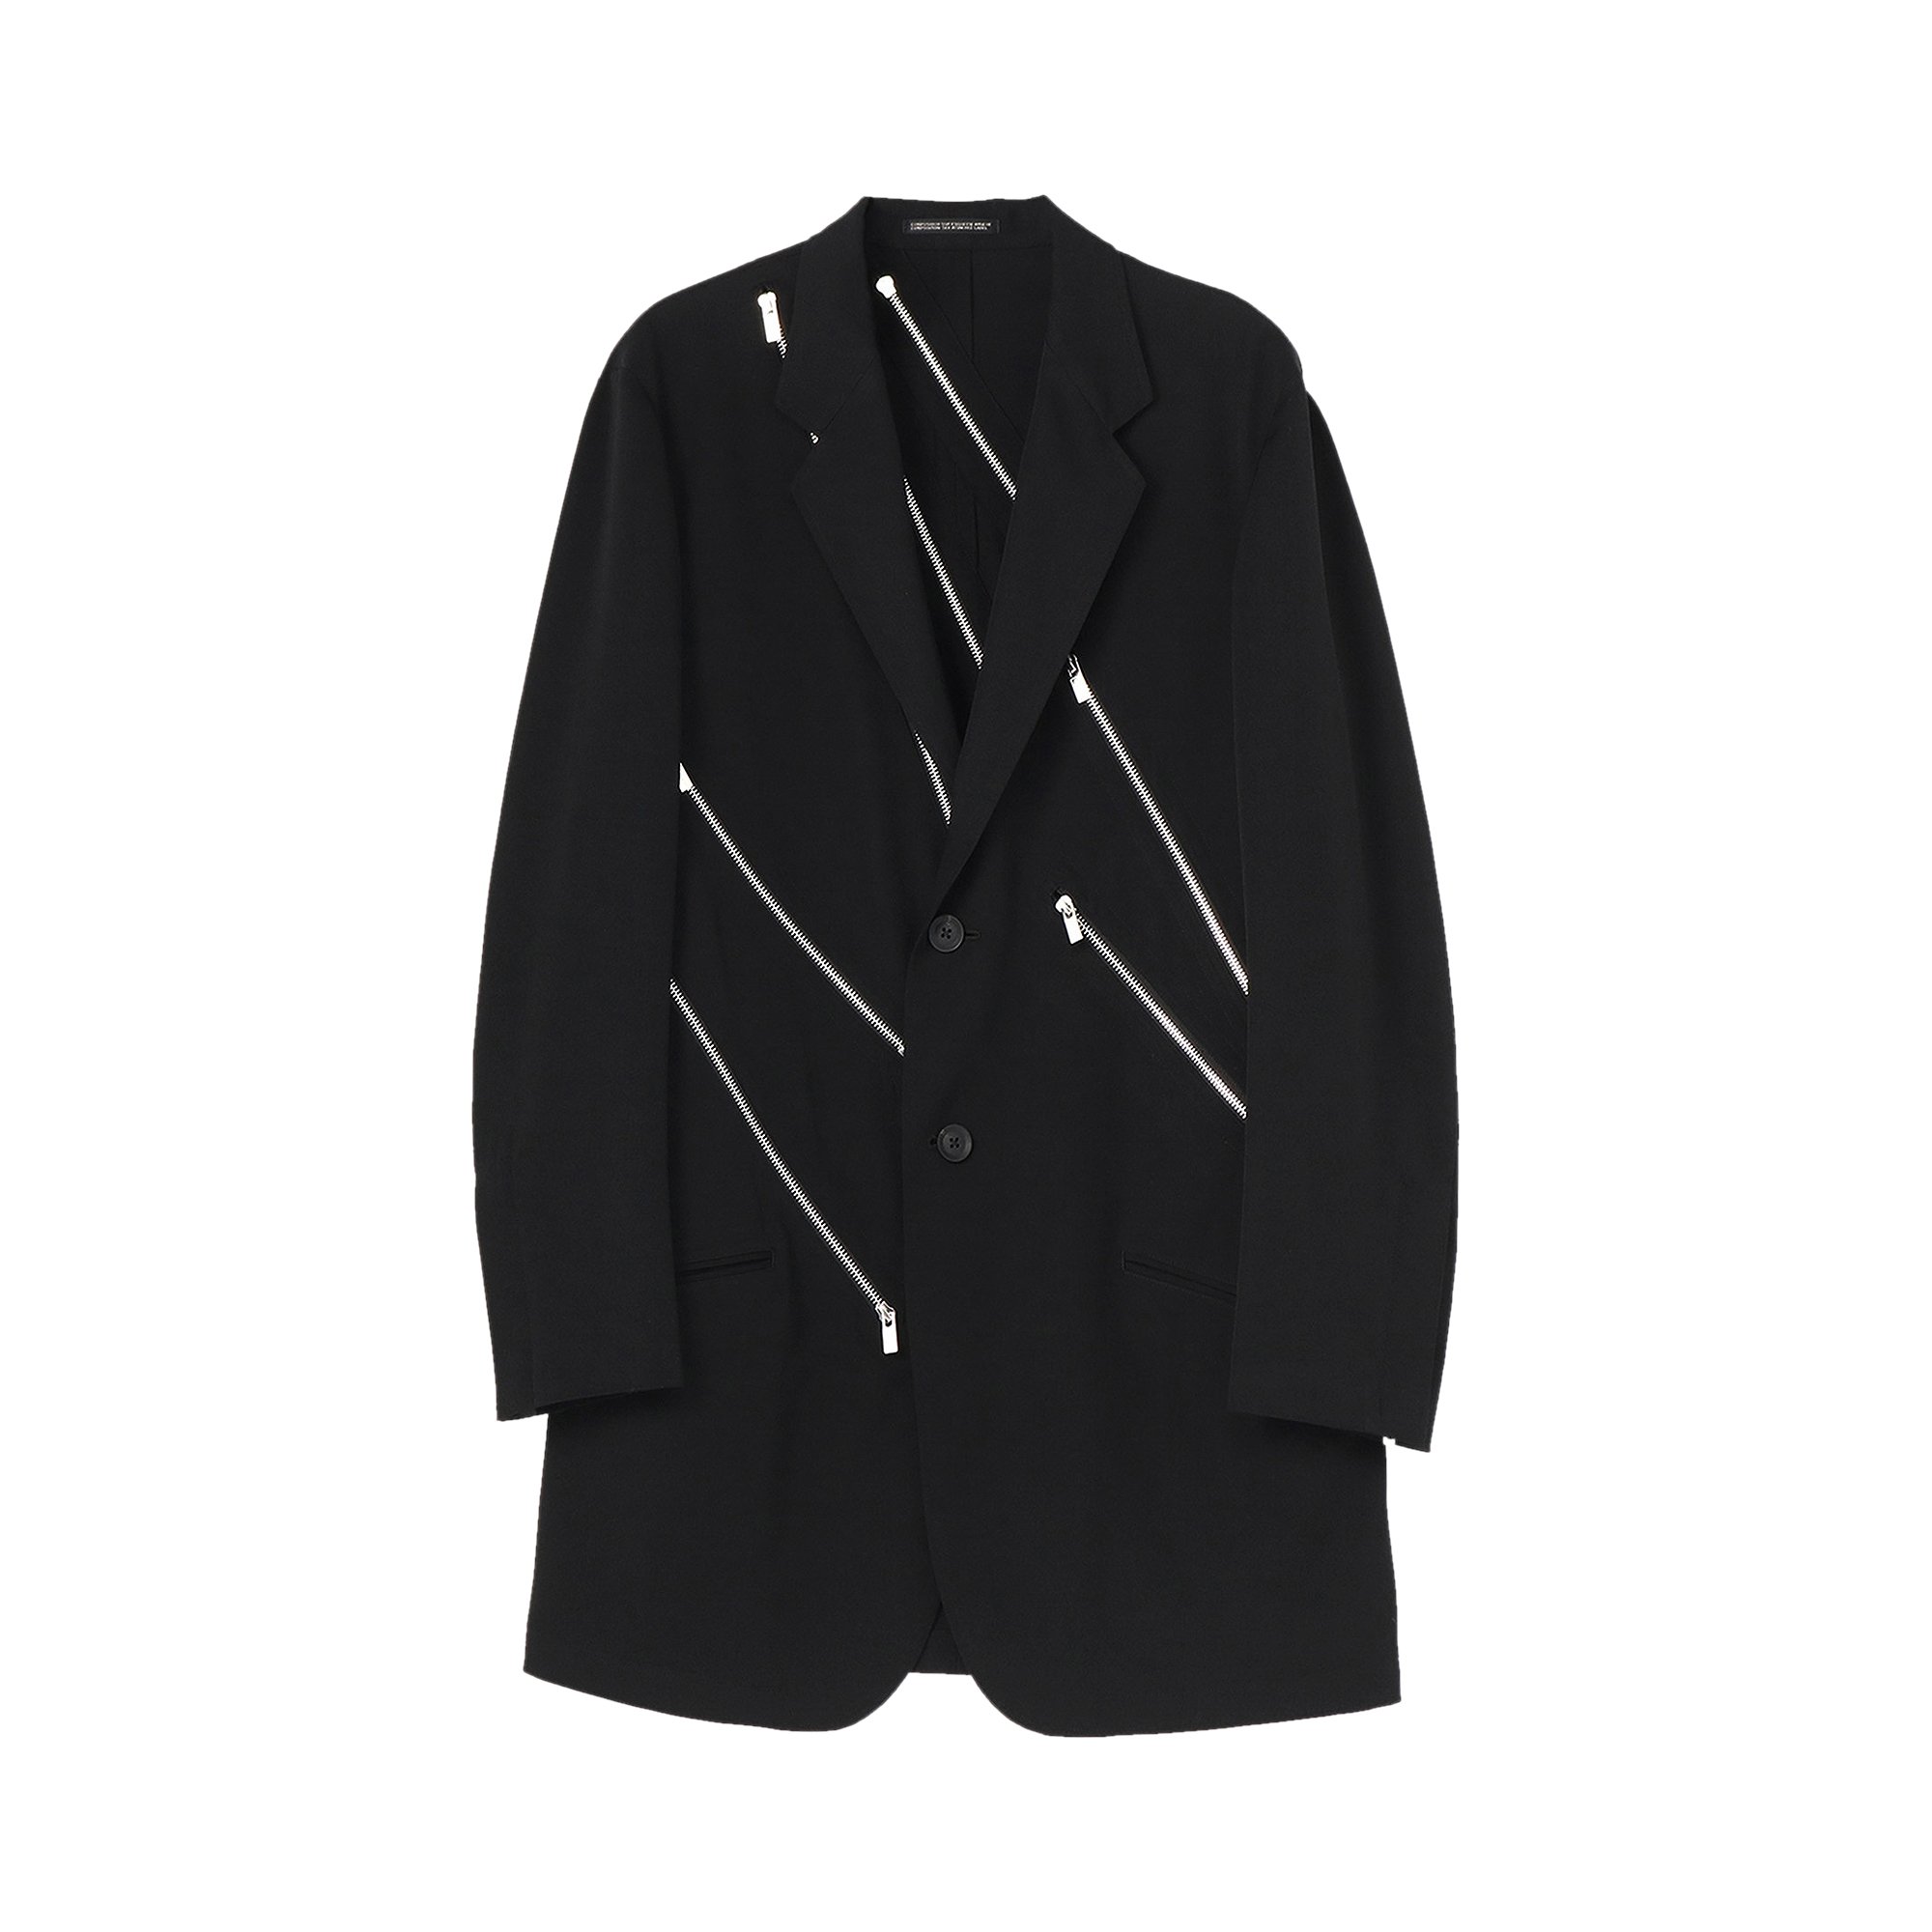 Buy Yohji Yamamoto Pour Homme Zip Jacket 'Black' - HG J25 100 BLAC